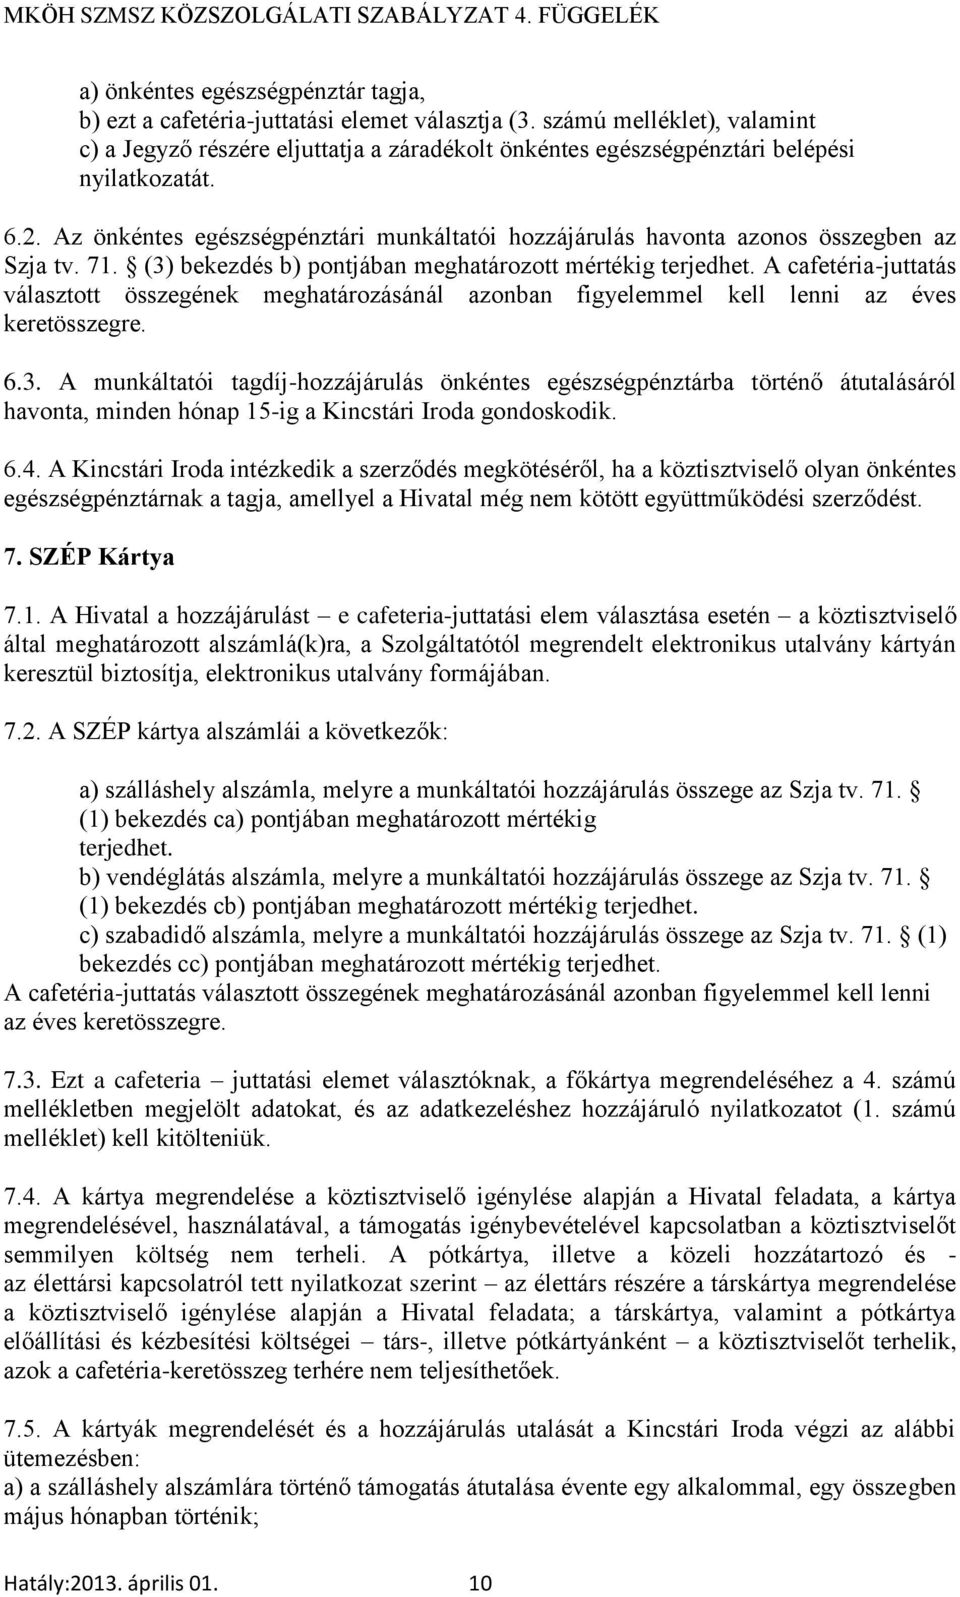 Az önkéntes egészségpénztári munkáltatói hozzájárulás havonta azonos összegben az Szja tv. 71. (3) bekezdés b) pontjában meghatározott mértékig terjedhet.